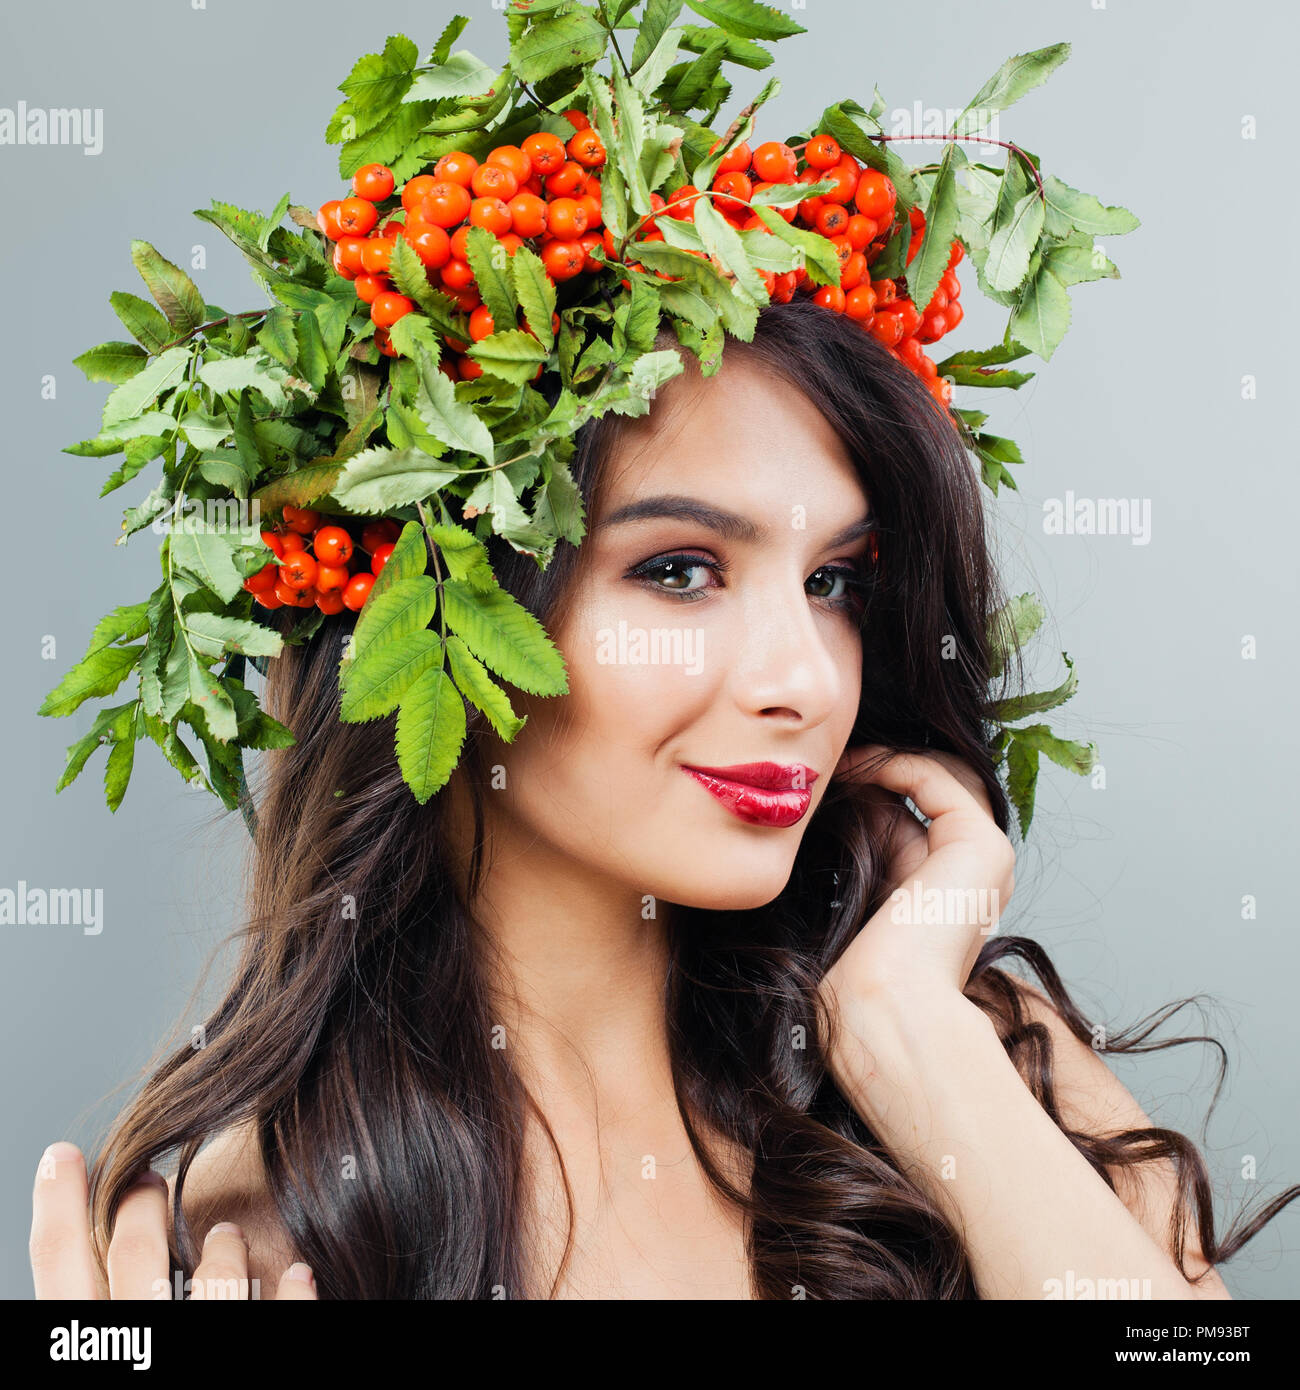 Porträt der jungen Frau mit Make-up, welliges Haar und roten Beeren und grüne Blätter auf dem Kopf Stockfoto